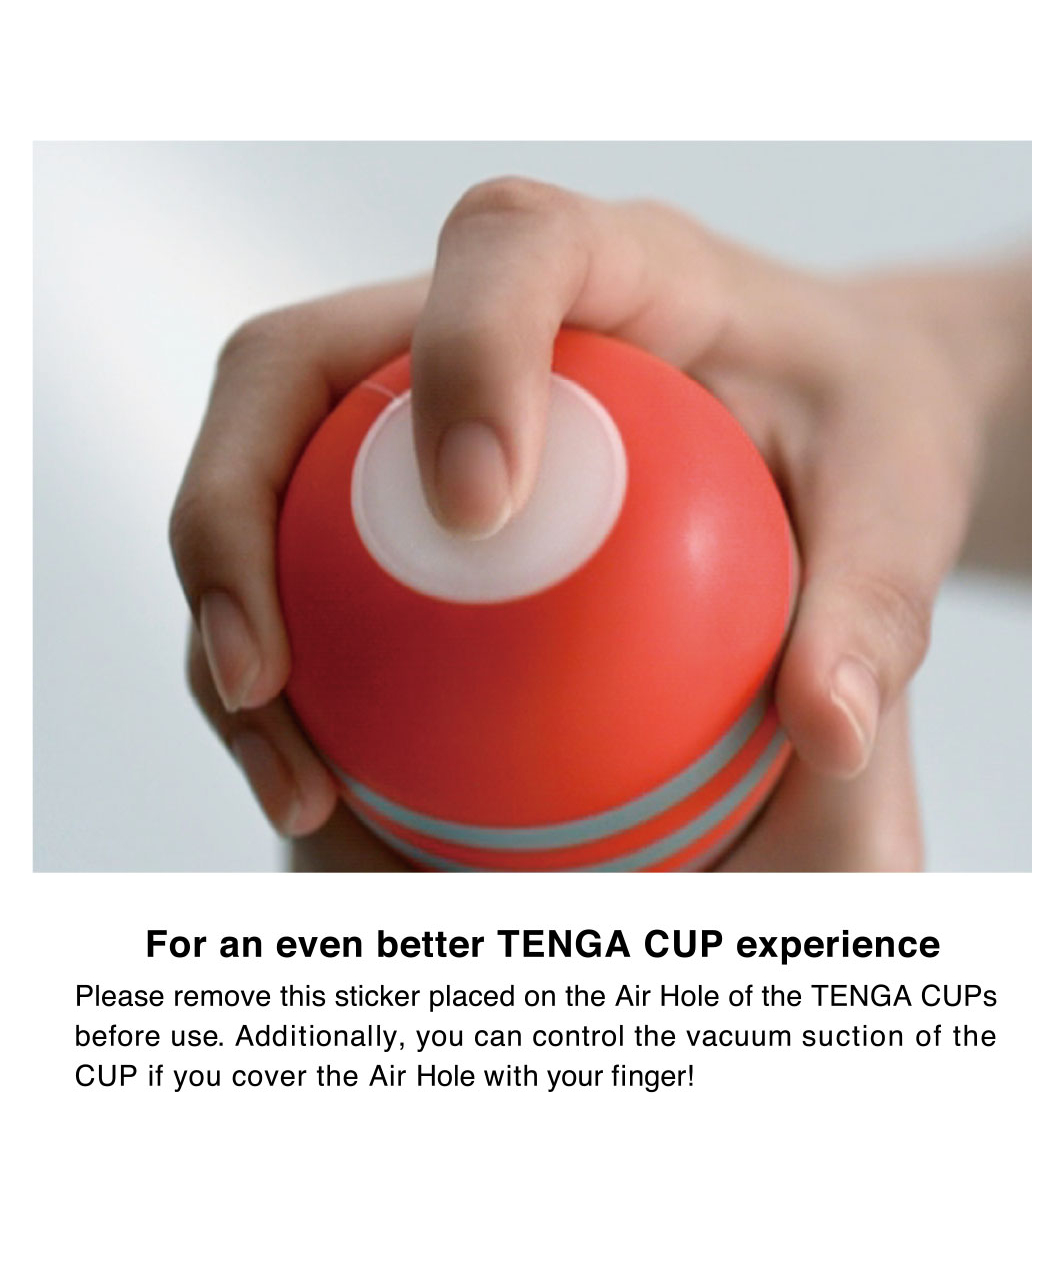 Tenga Air Cushion Cup